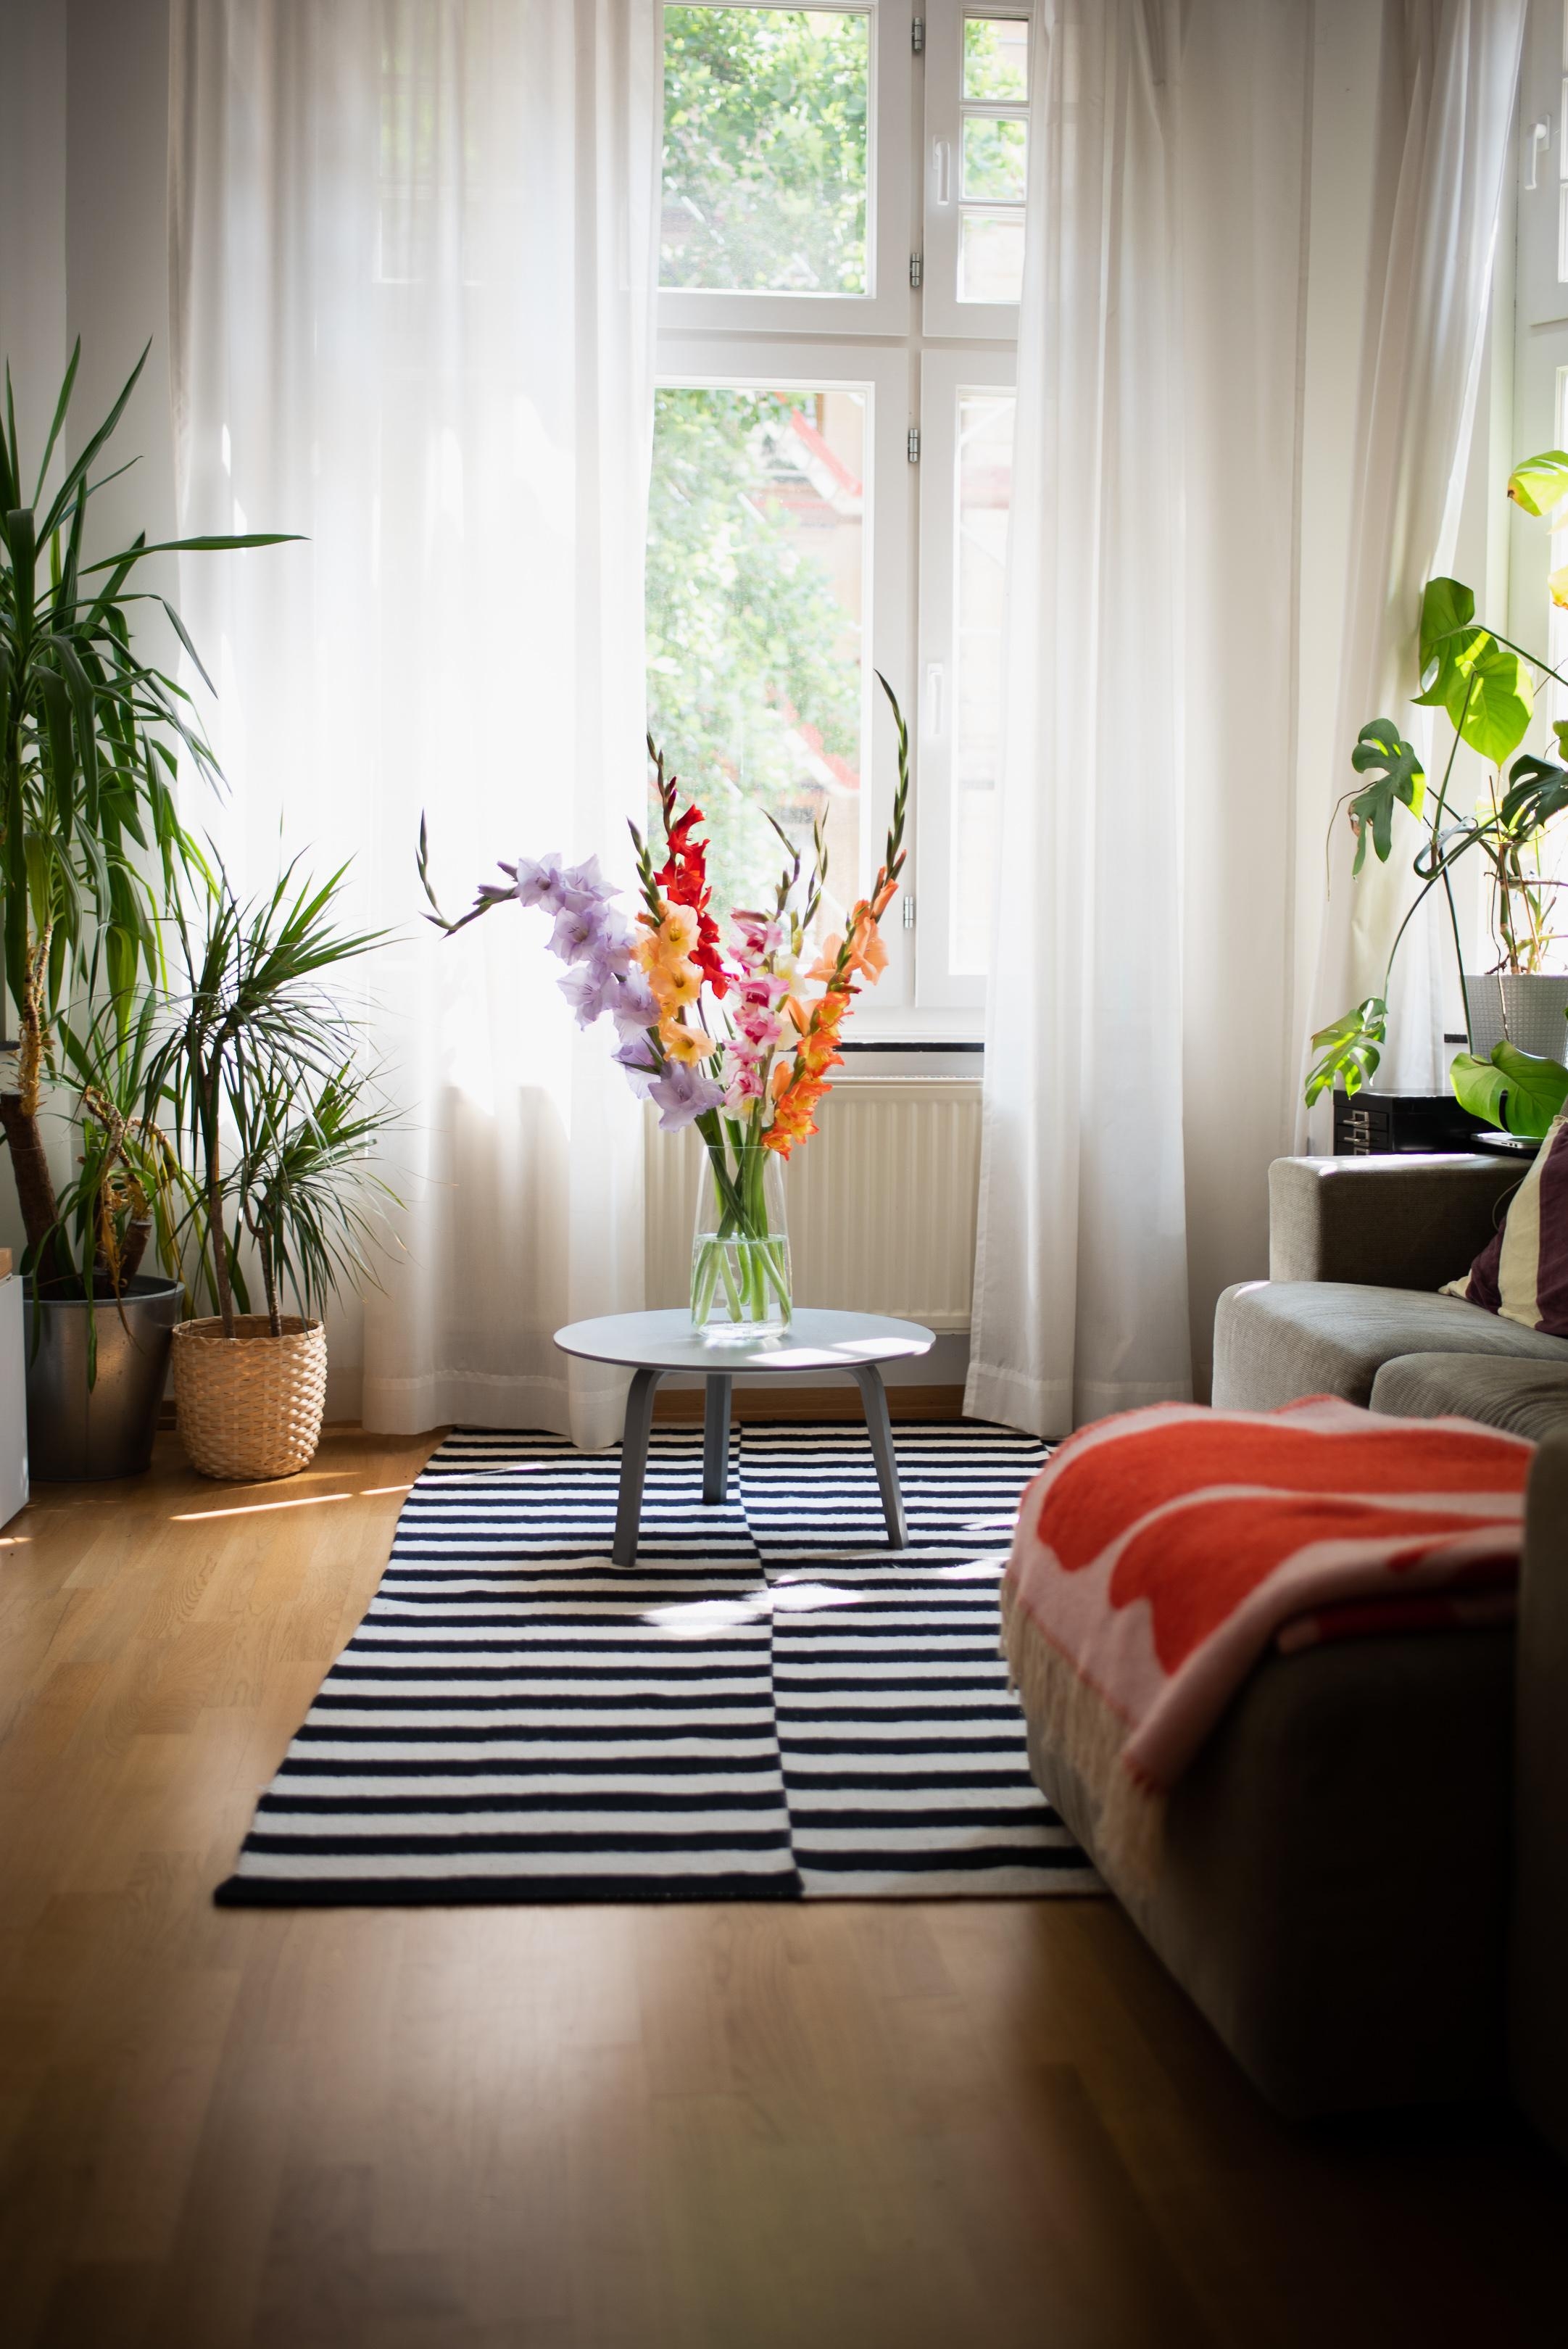 Einen prächtigen Blumengruß #gladiolen #wohnzimmer #altbau #freshflowers #interior #deko #vase #sofa 